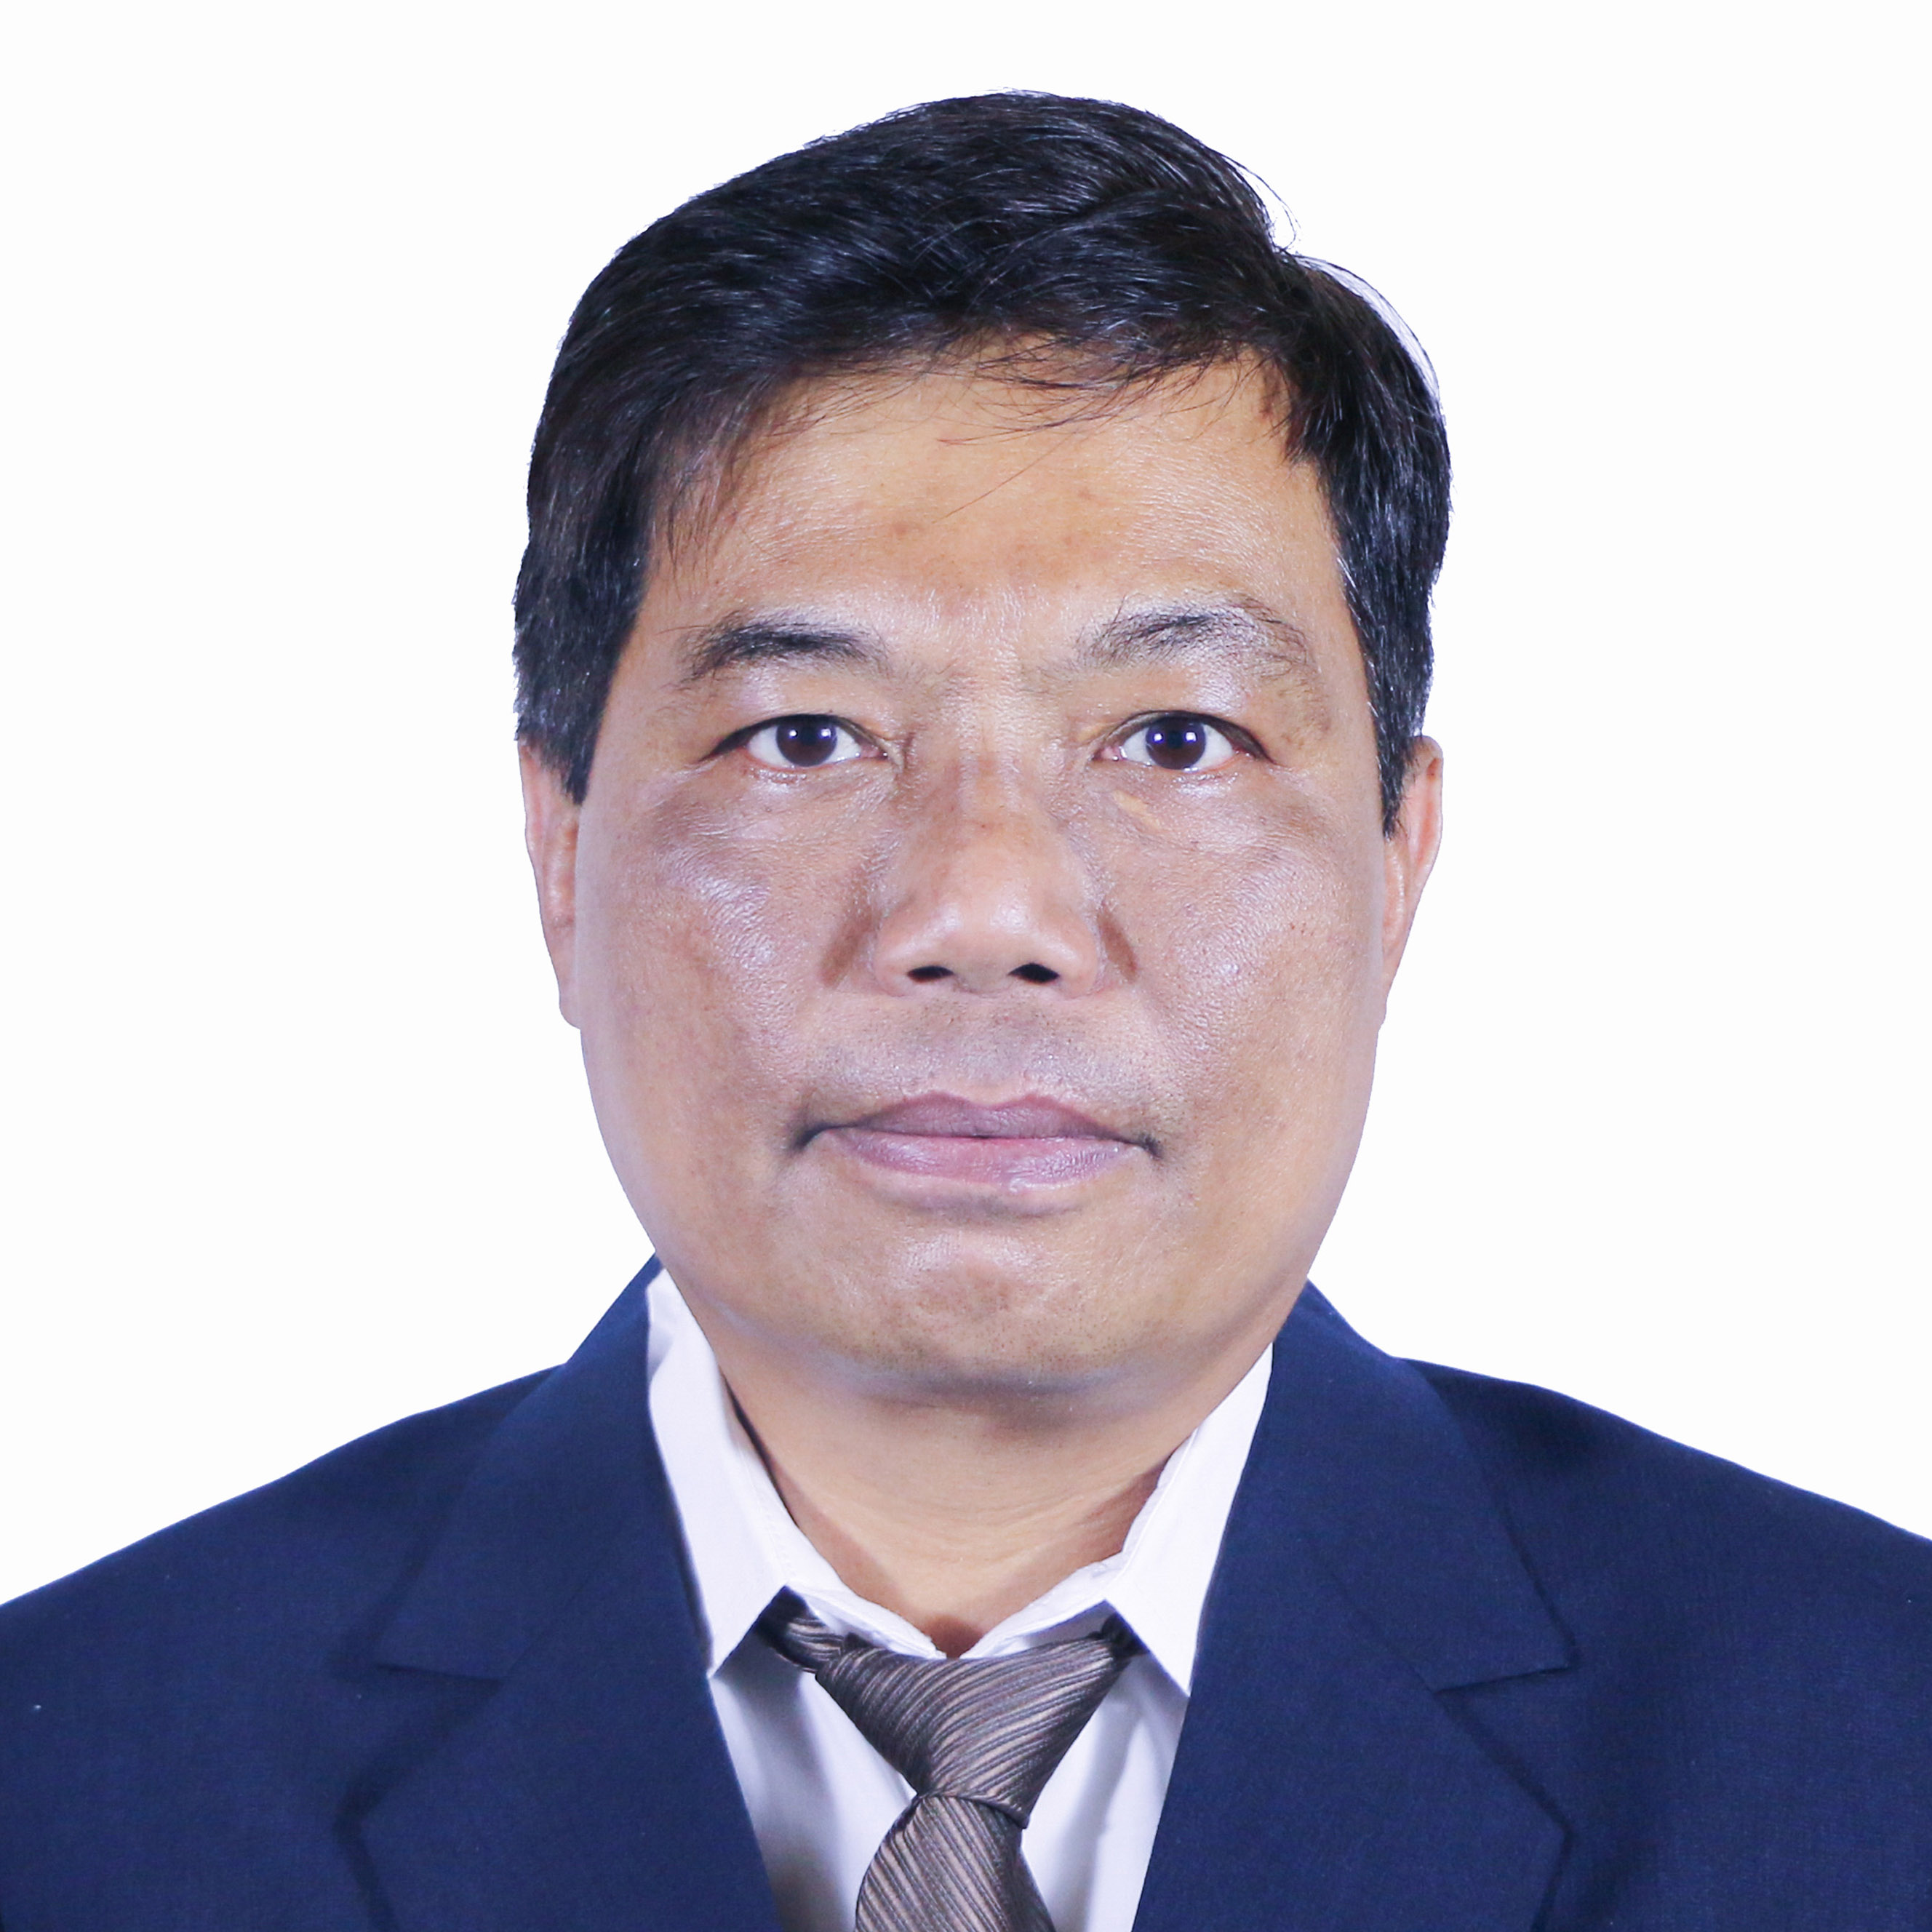 Dr. Bambang Murdaka Eka Jati, M.S.